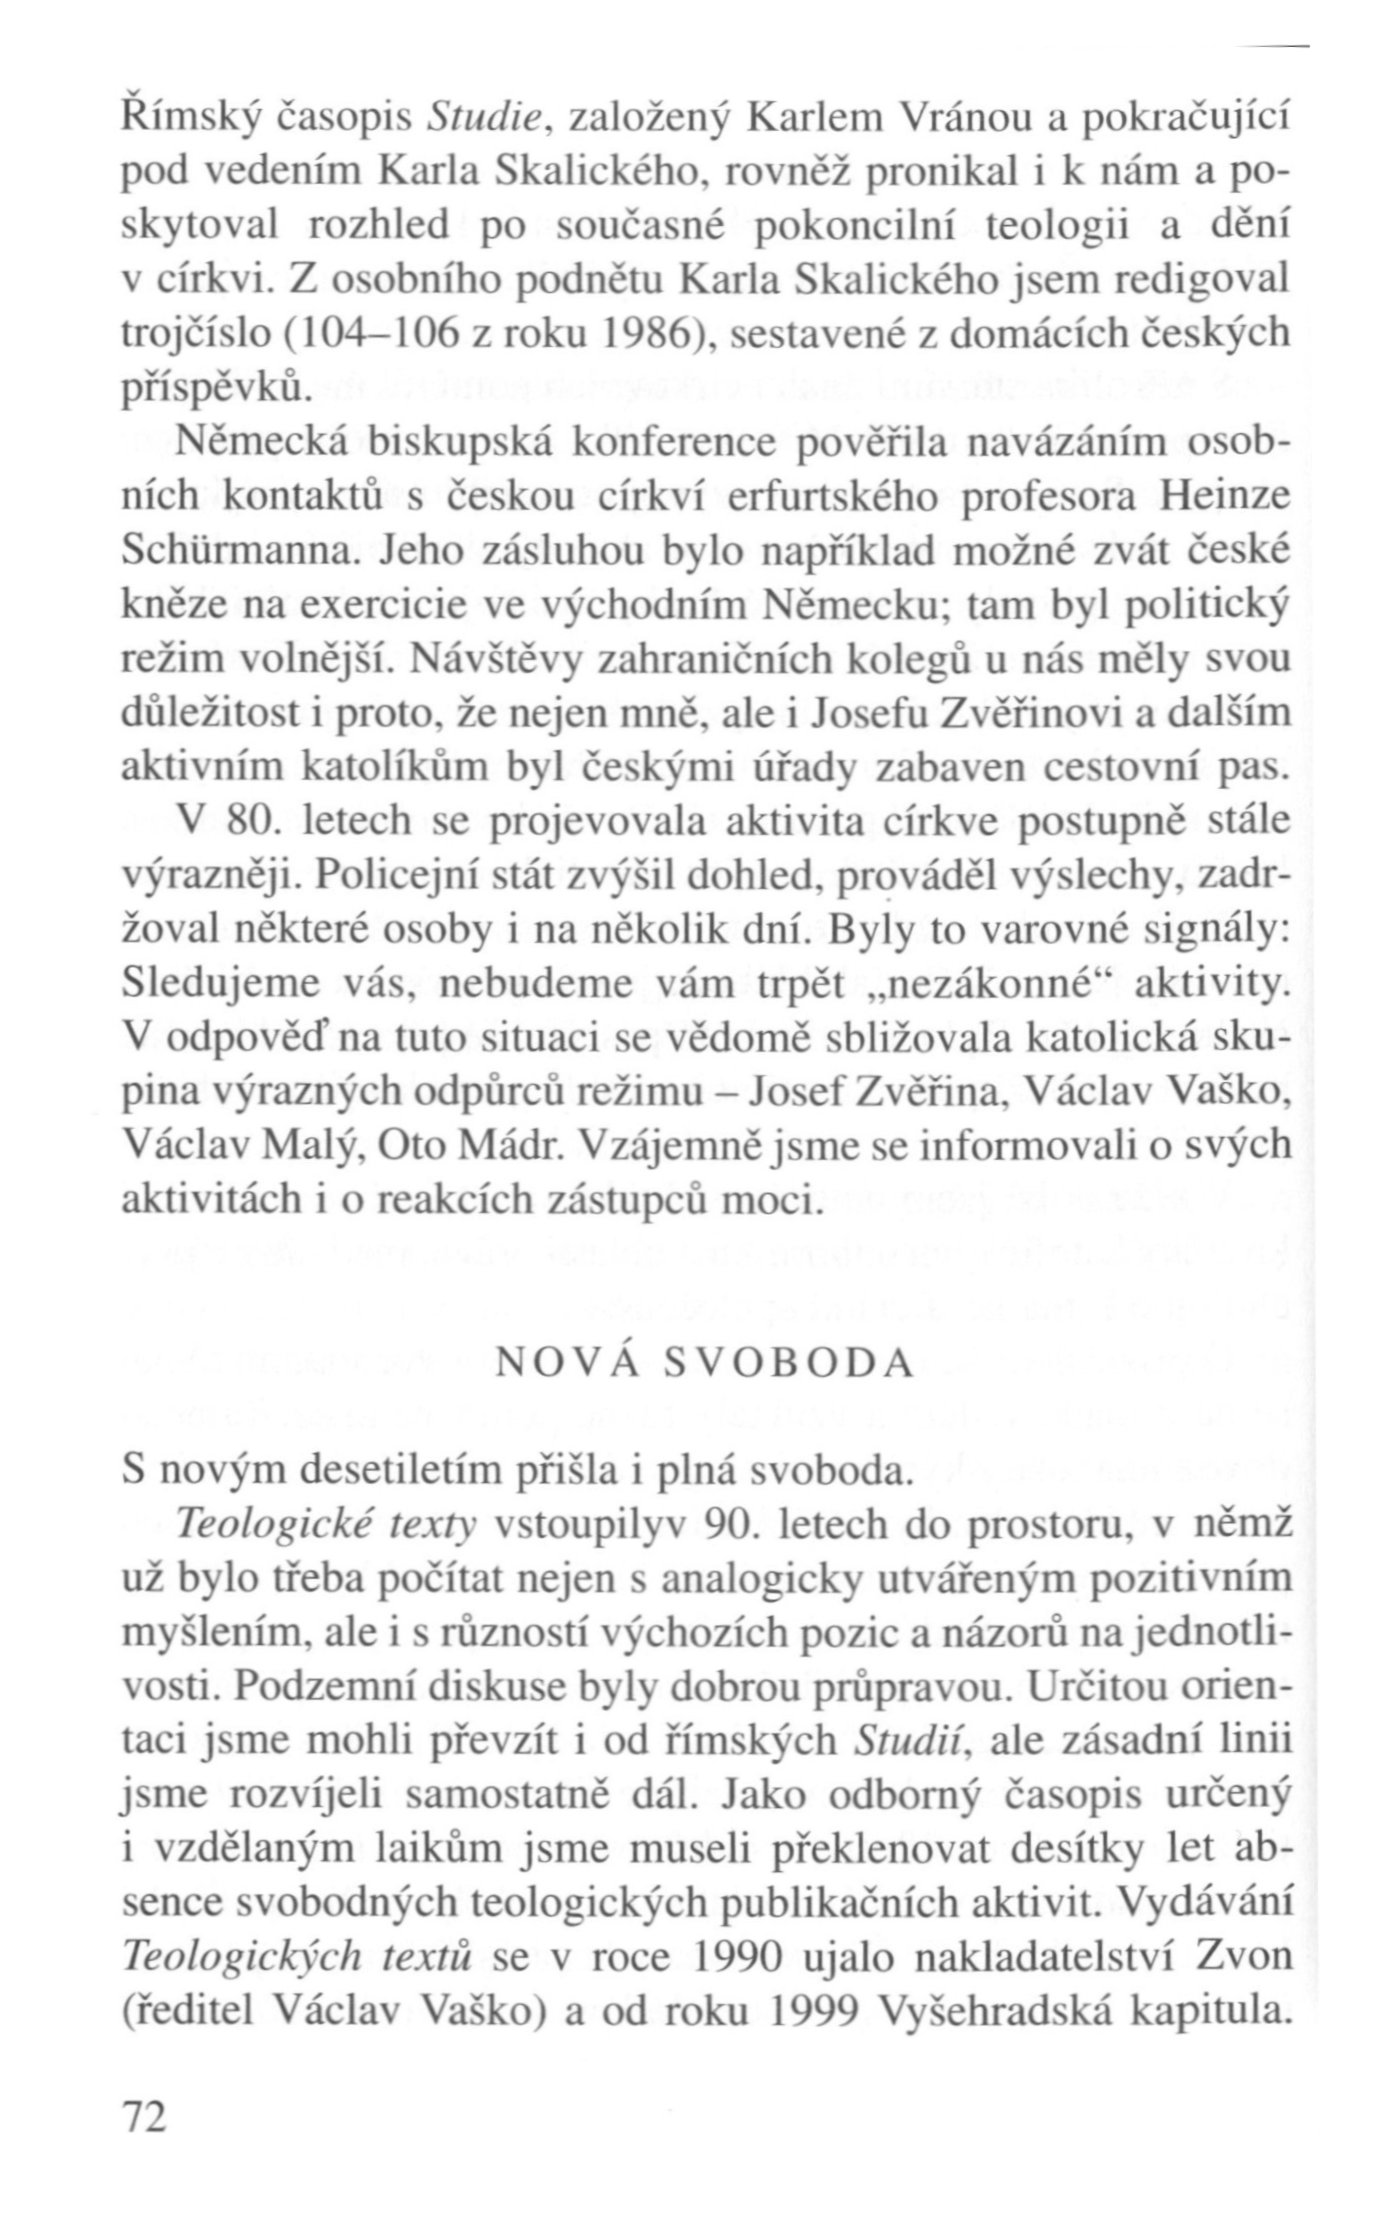 V zápasech za Boží věc / VZPOMÍNKY / Nová svoboda / strana 72